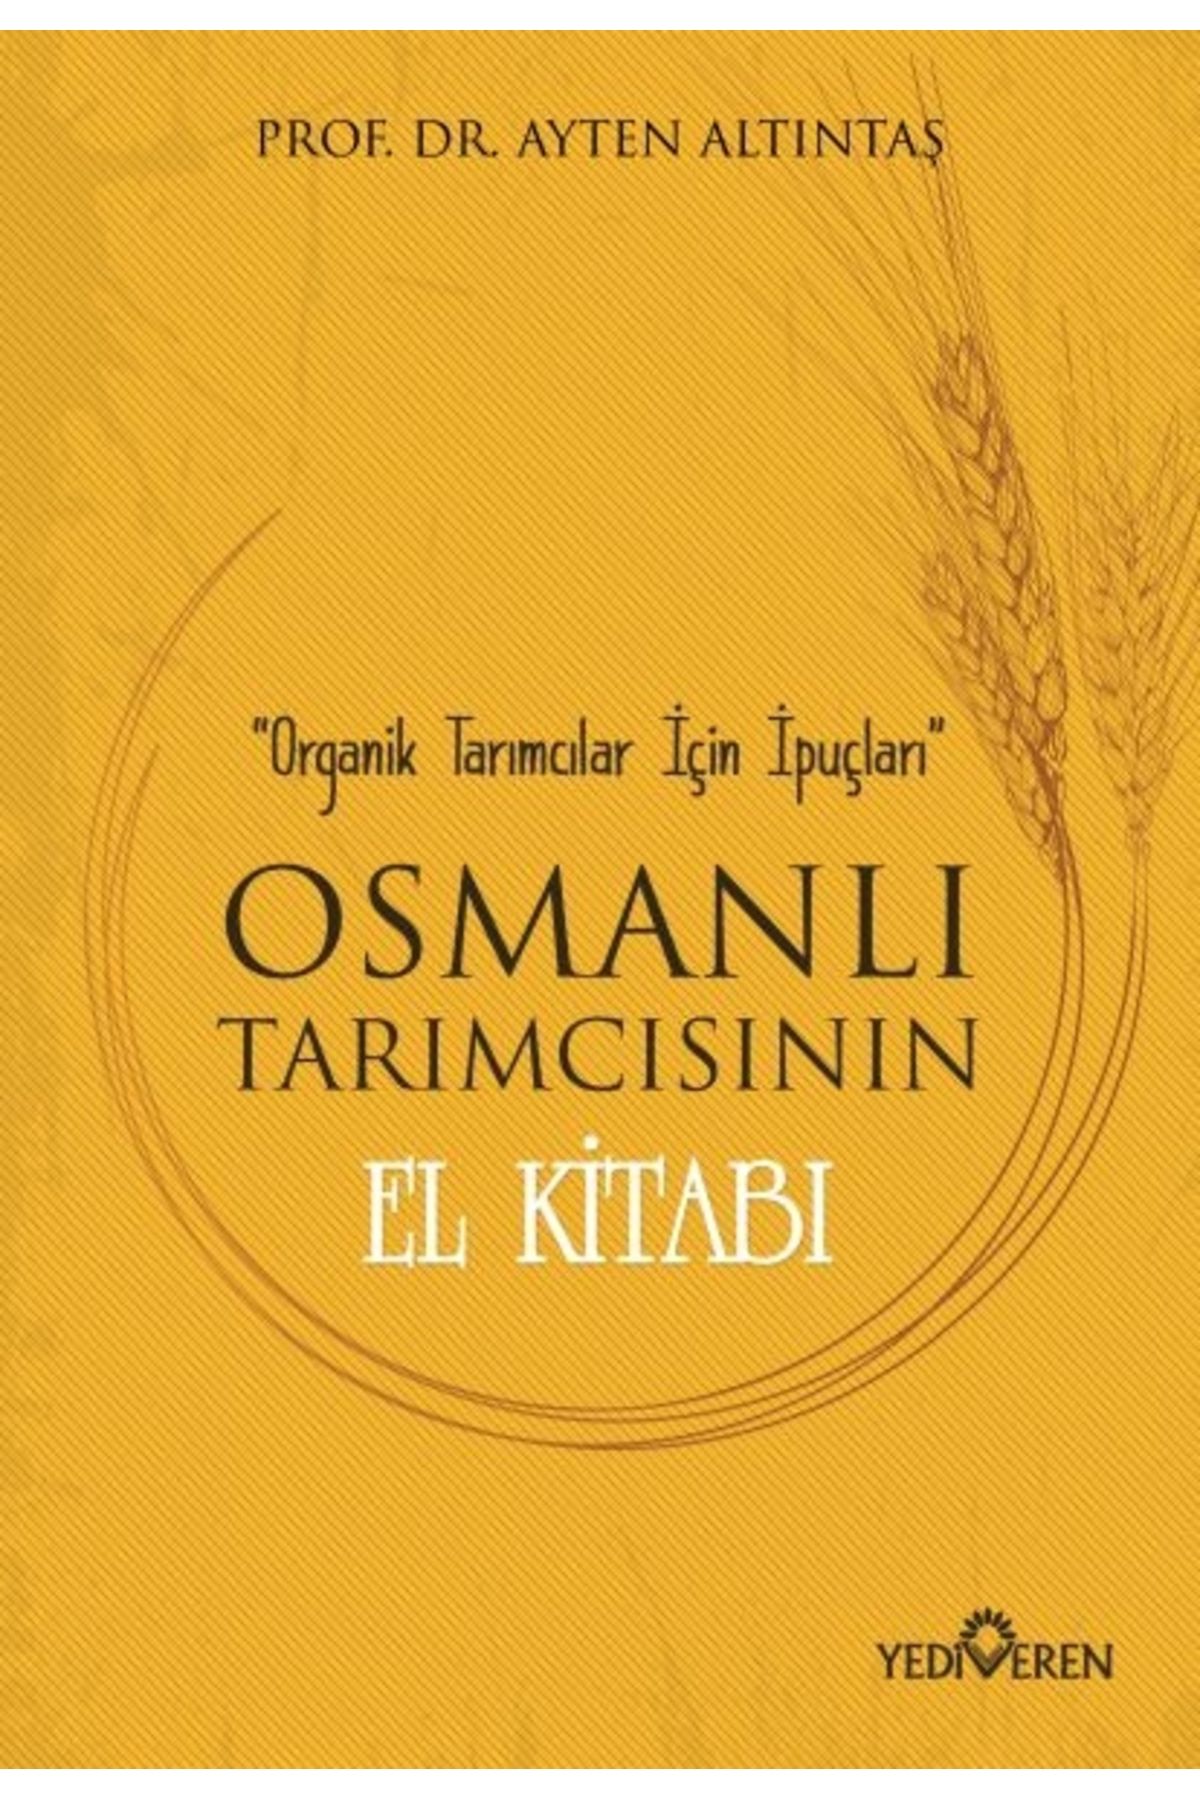 Yediveren Yayınları Osmanlı Tarımcısının El Kitabı - Organik Tarımcılar Için Ipuçları